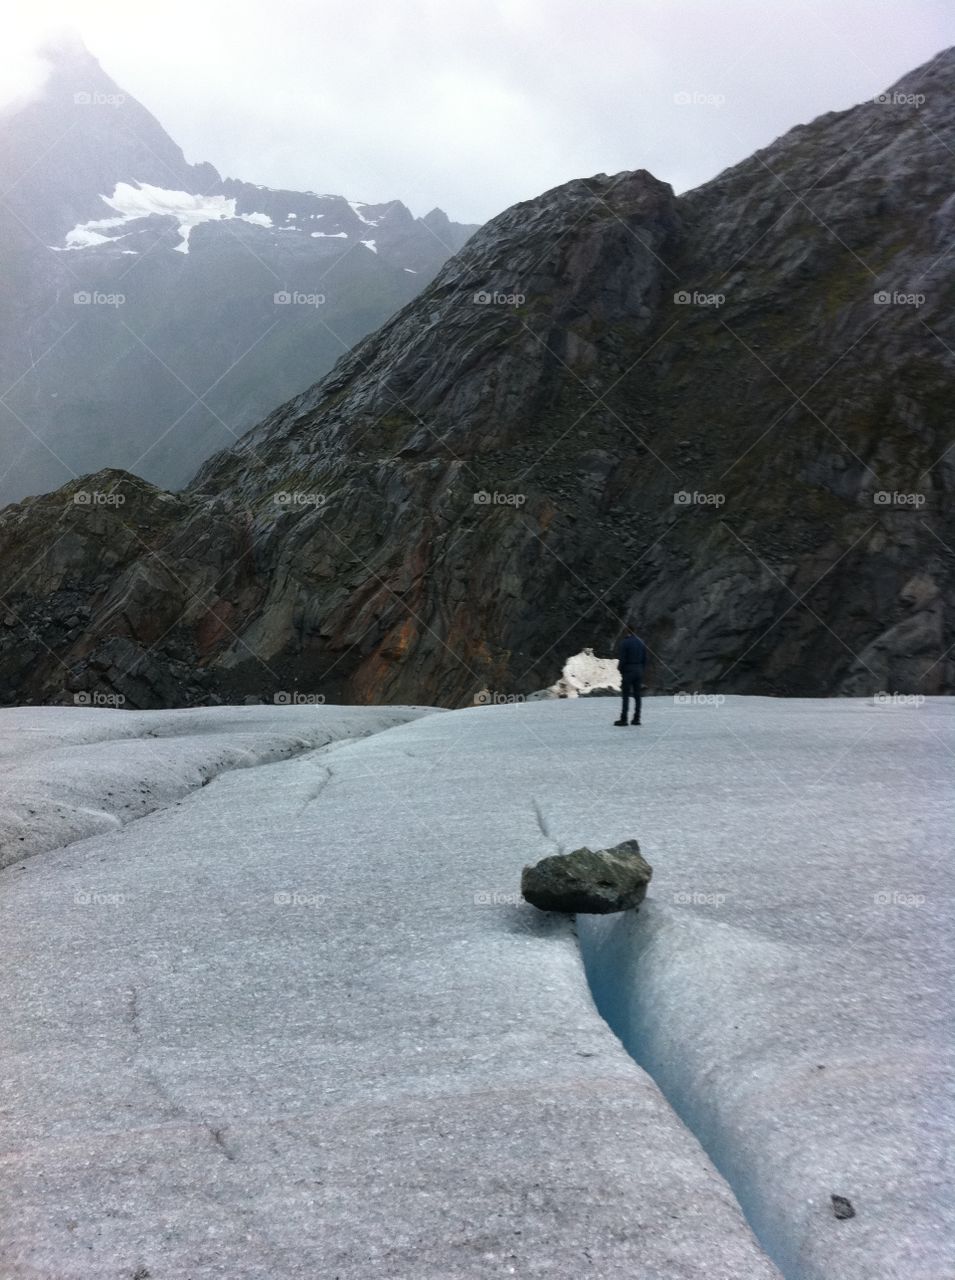 Walking on a glacier